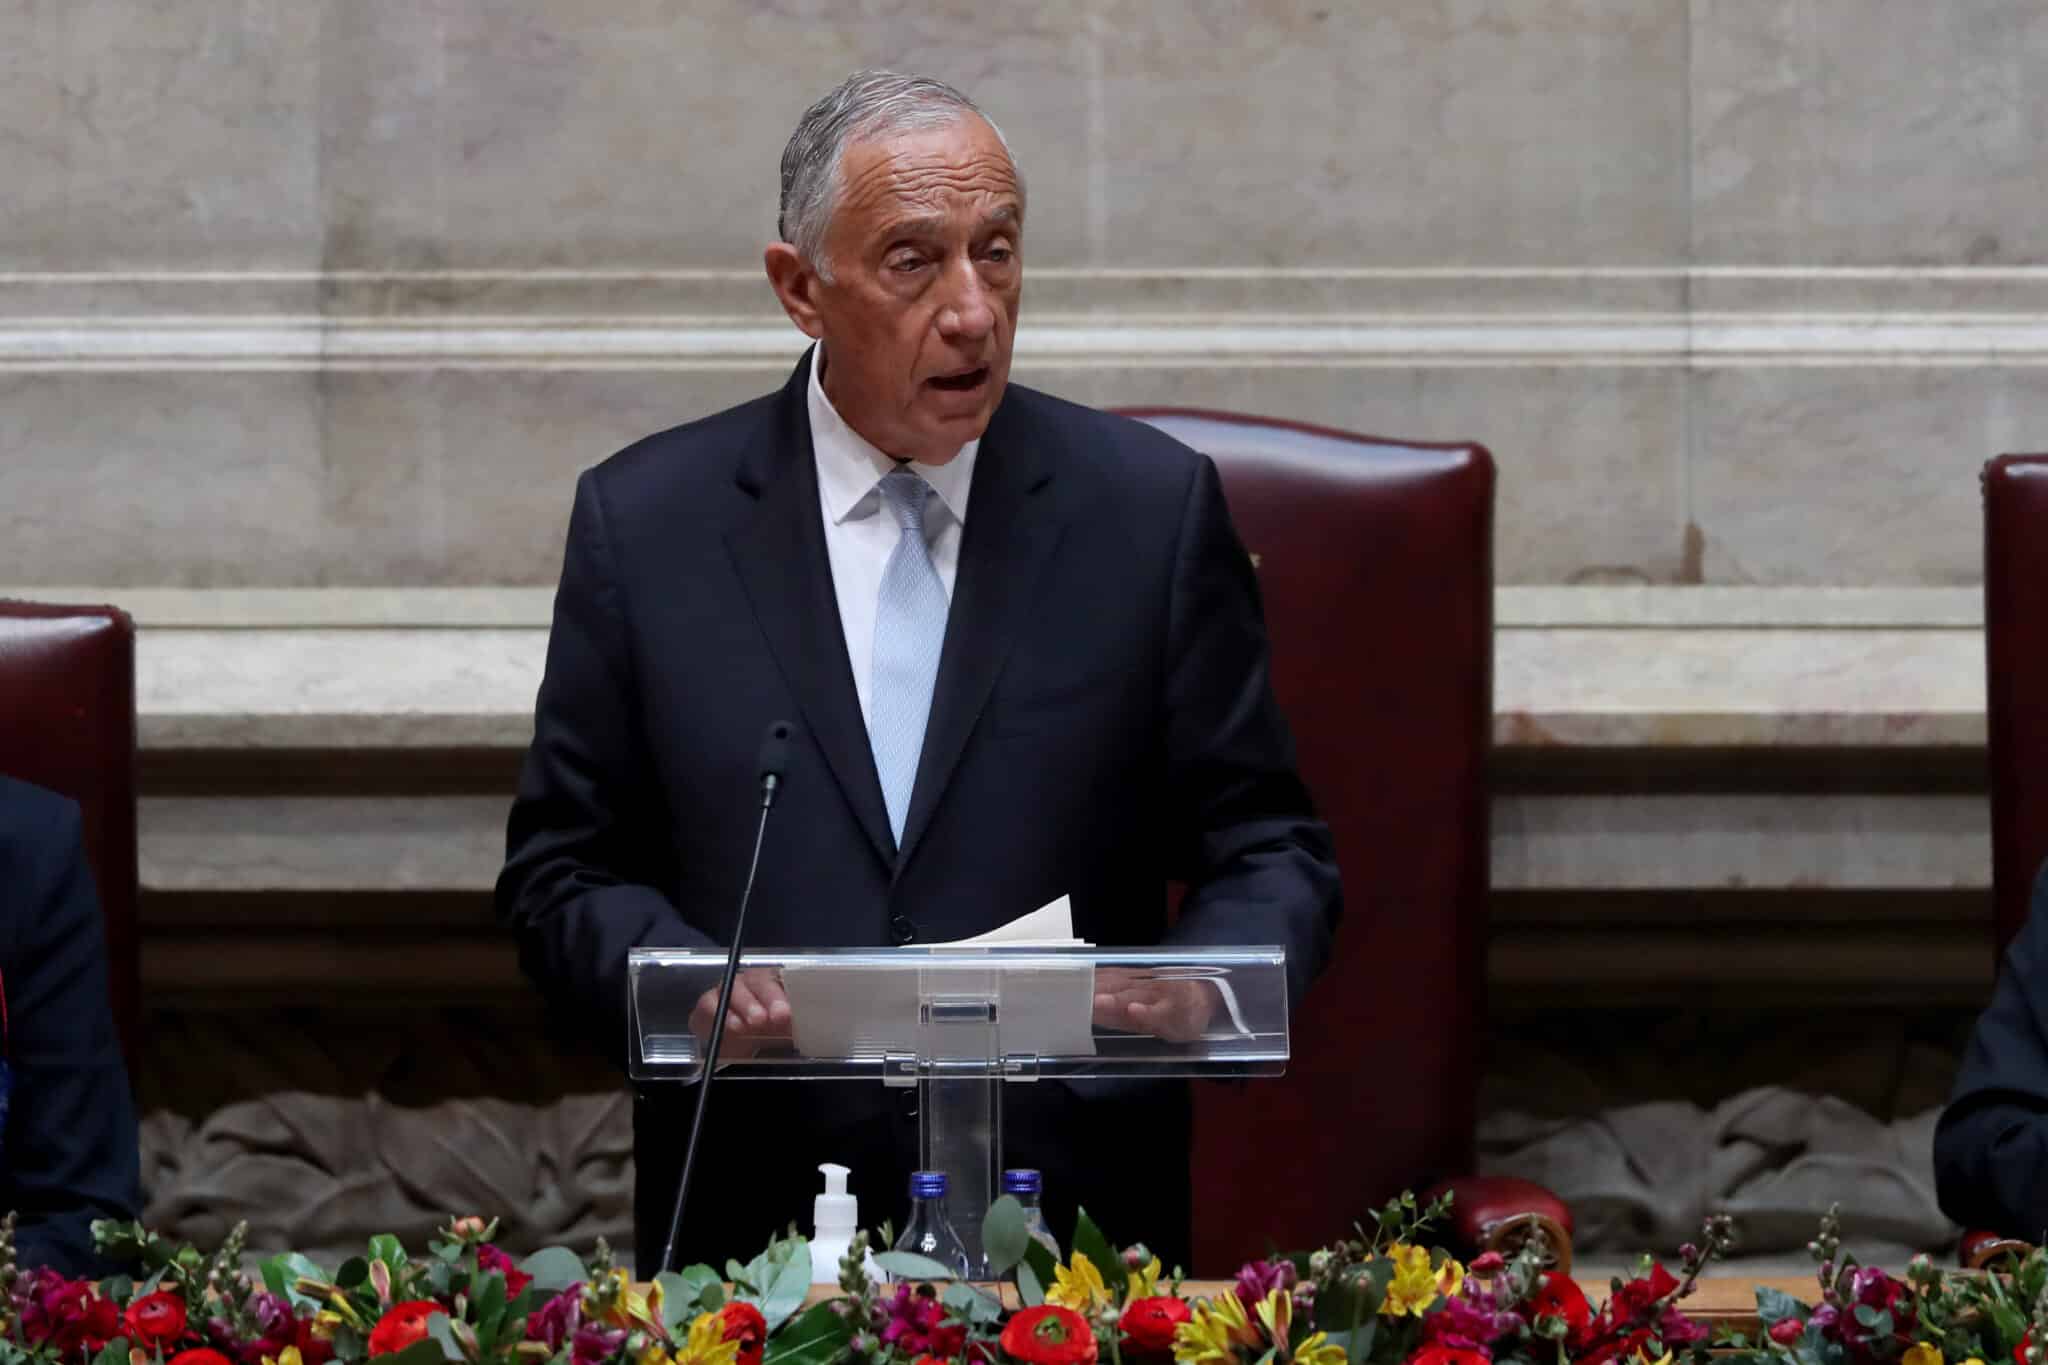 El presidente de Portugal, Marcelo Rebelo de Sousa, ha decidido convocar elecciones anticipadas